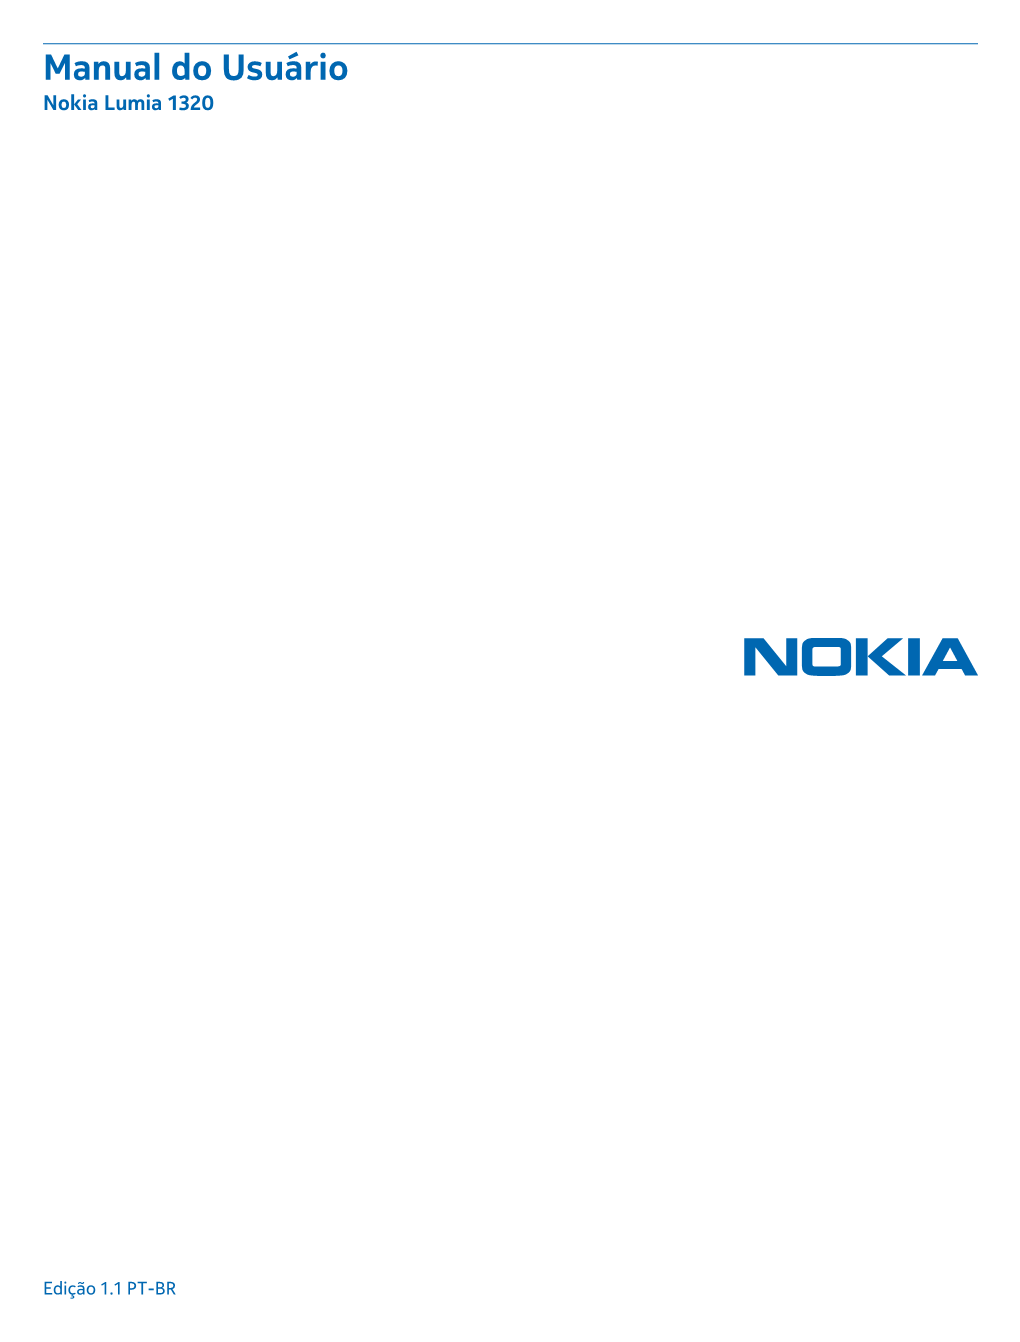 Manual Do Usuário Nokia Lumia 1320